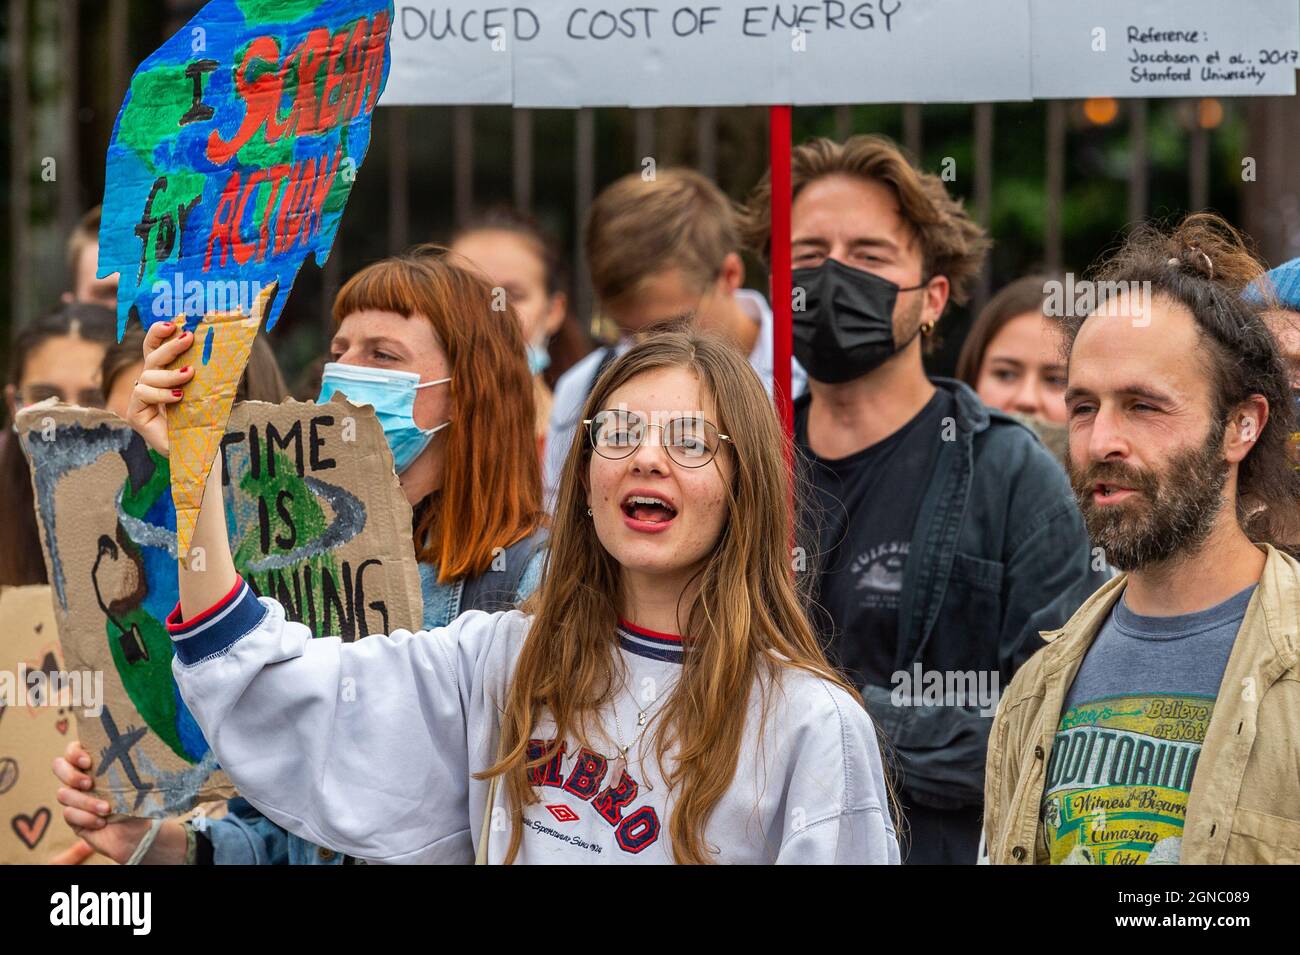 Cork, Irland. September 2021. Fridays for Future veranstaltete heute einen globalen Klimastreik auf der Grand Parade in Cork und forderte Klimagerechtigkeit in Irland und der ganzen Welt. Die meisten Demonstranten hielten Schilder und Plakate. Quelle: AG News/Alamy Live News Stockfoto